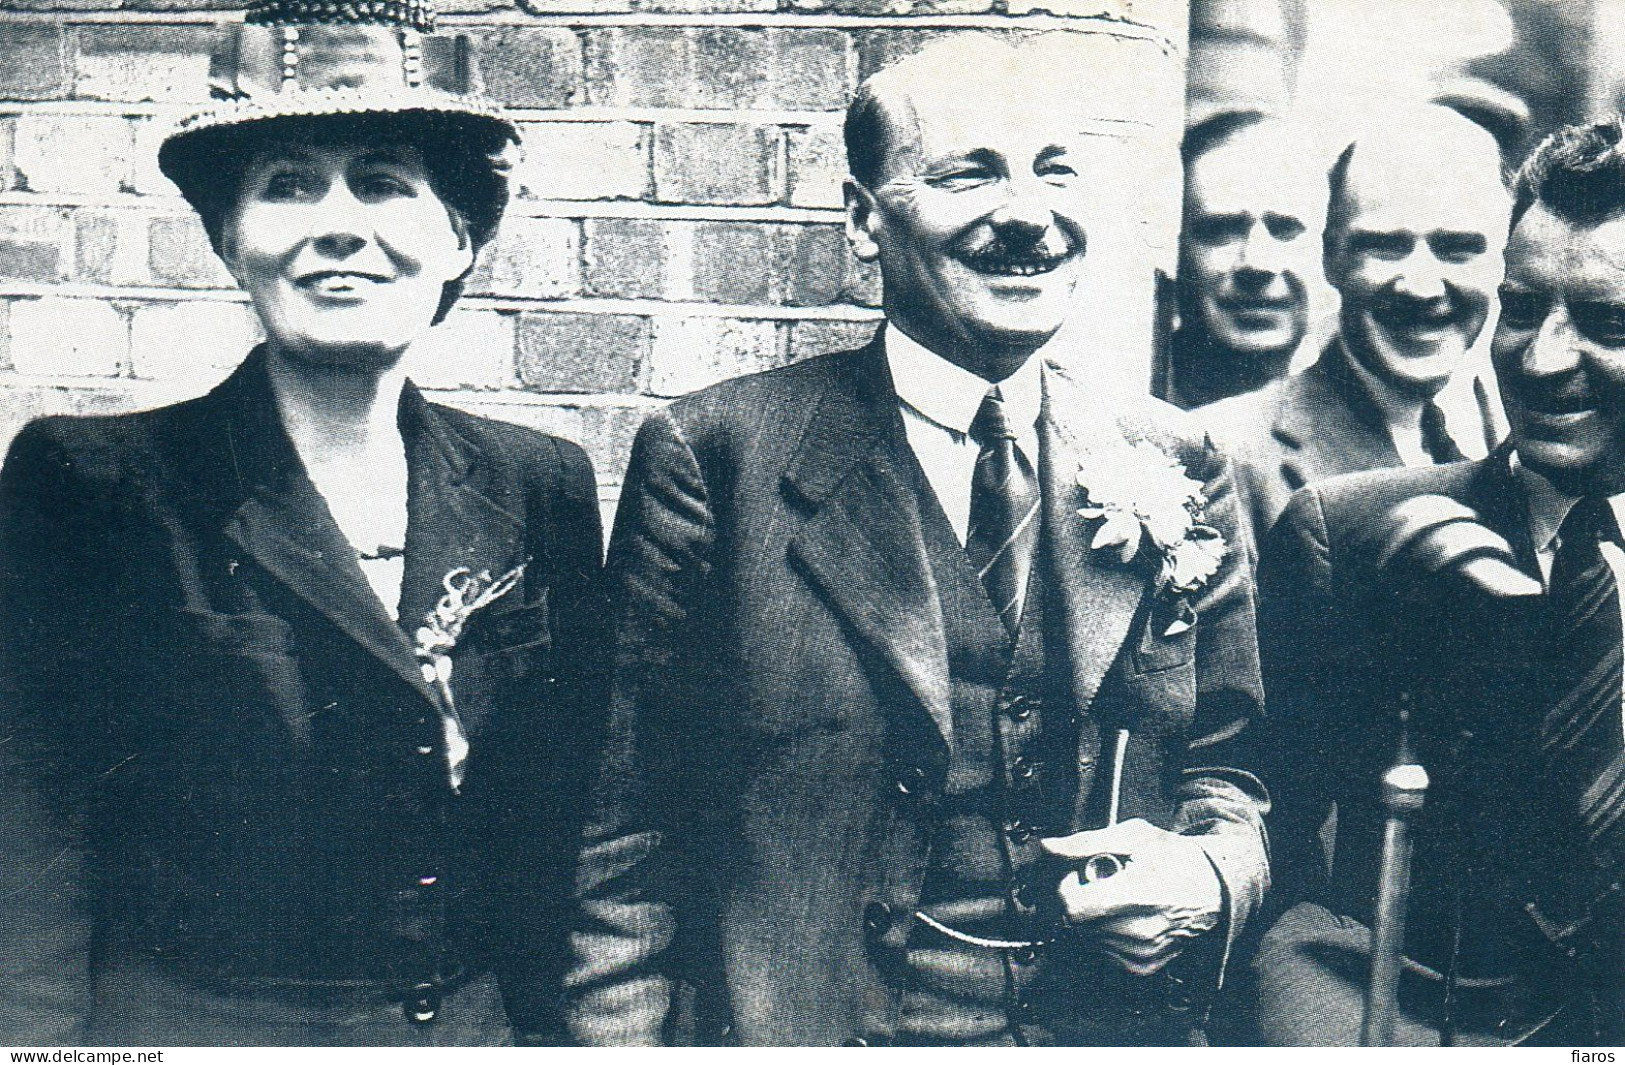 "Election Victory, 26th July, 1945" Clement Attlee, Transport House, Labour Party [CPM Nostalgia Postcard Reproduction] - Politieke Partijen & Verkiezingen